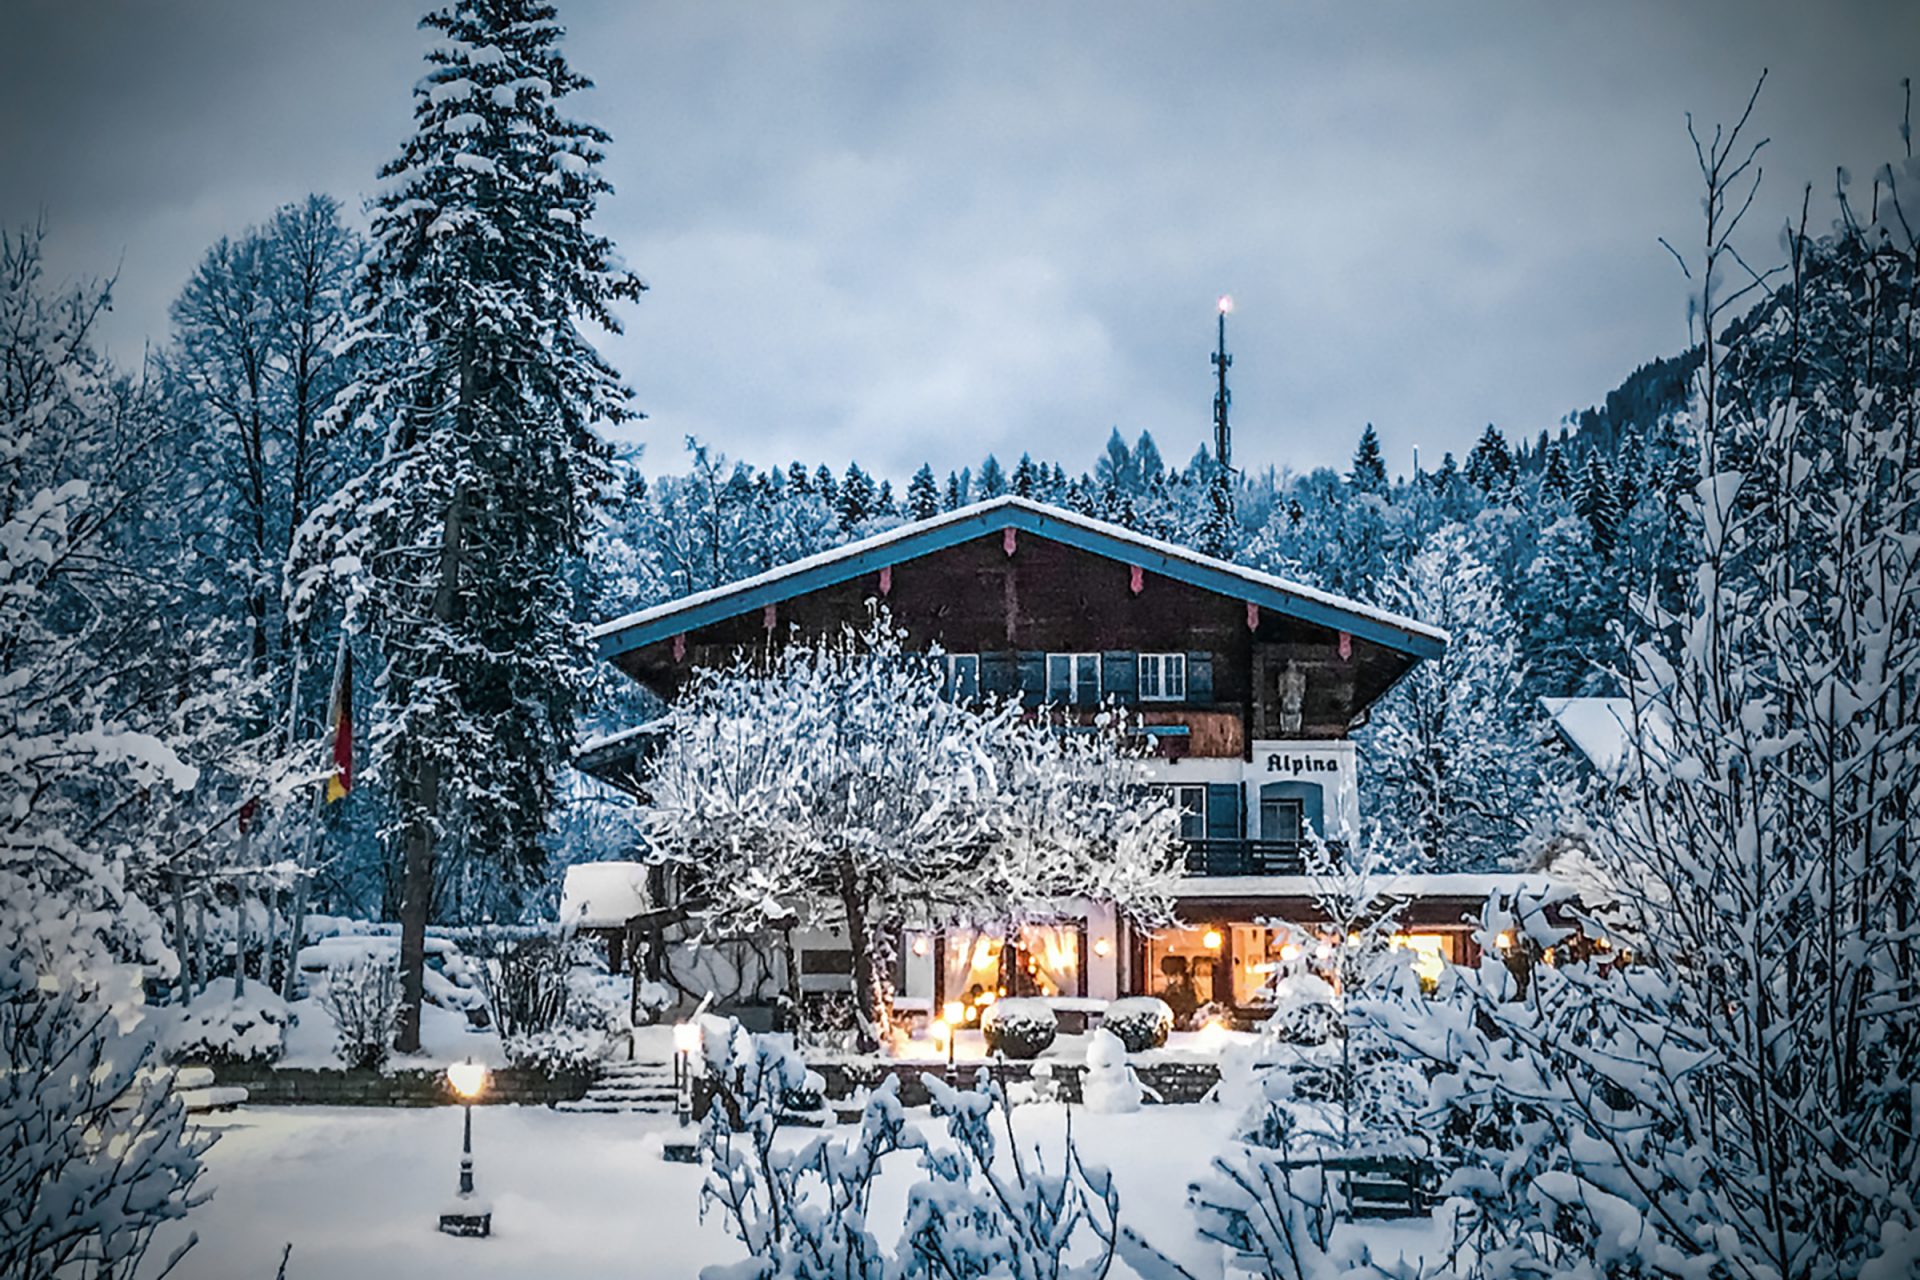 Stoll's Hotel Alpina – Unser traditionsreiches Hotel in einmaliger Lage in Schönau am Königssee für Ihren erholsamen Urlaub zu zweit oder mit der Familie.